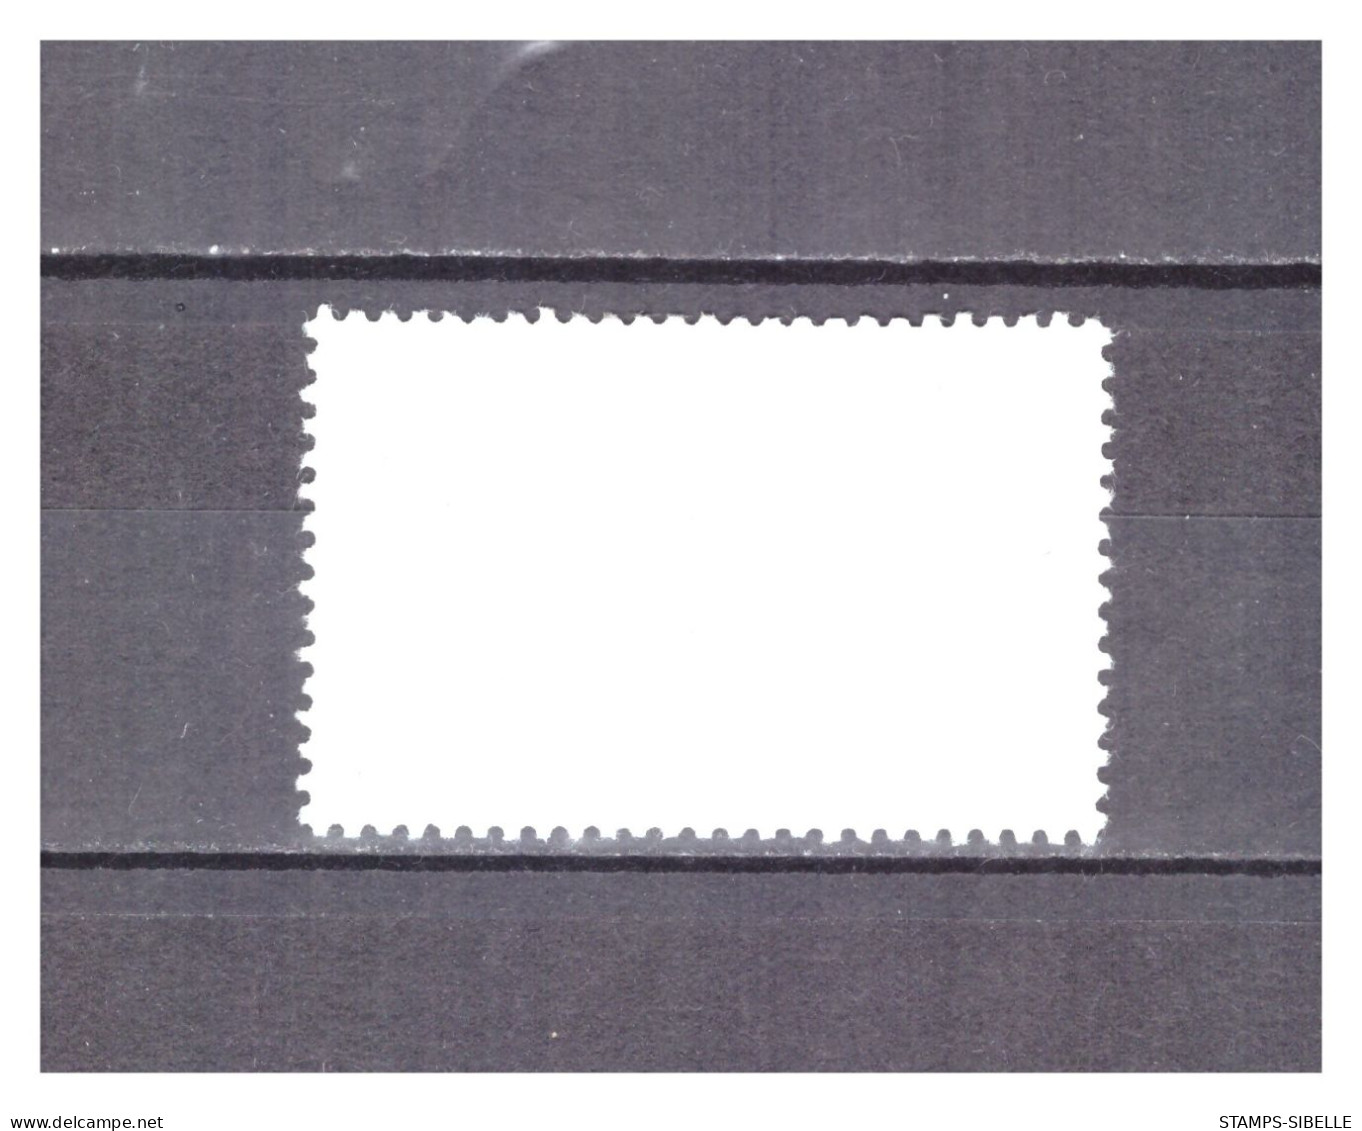 NOUVELLES  HEBRIDES   . N ° 265 .  60 C  POISSON    OBLITERE    .  SUPERBE . - Used Stamps